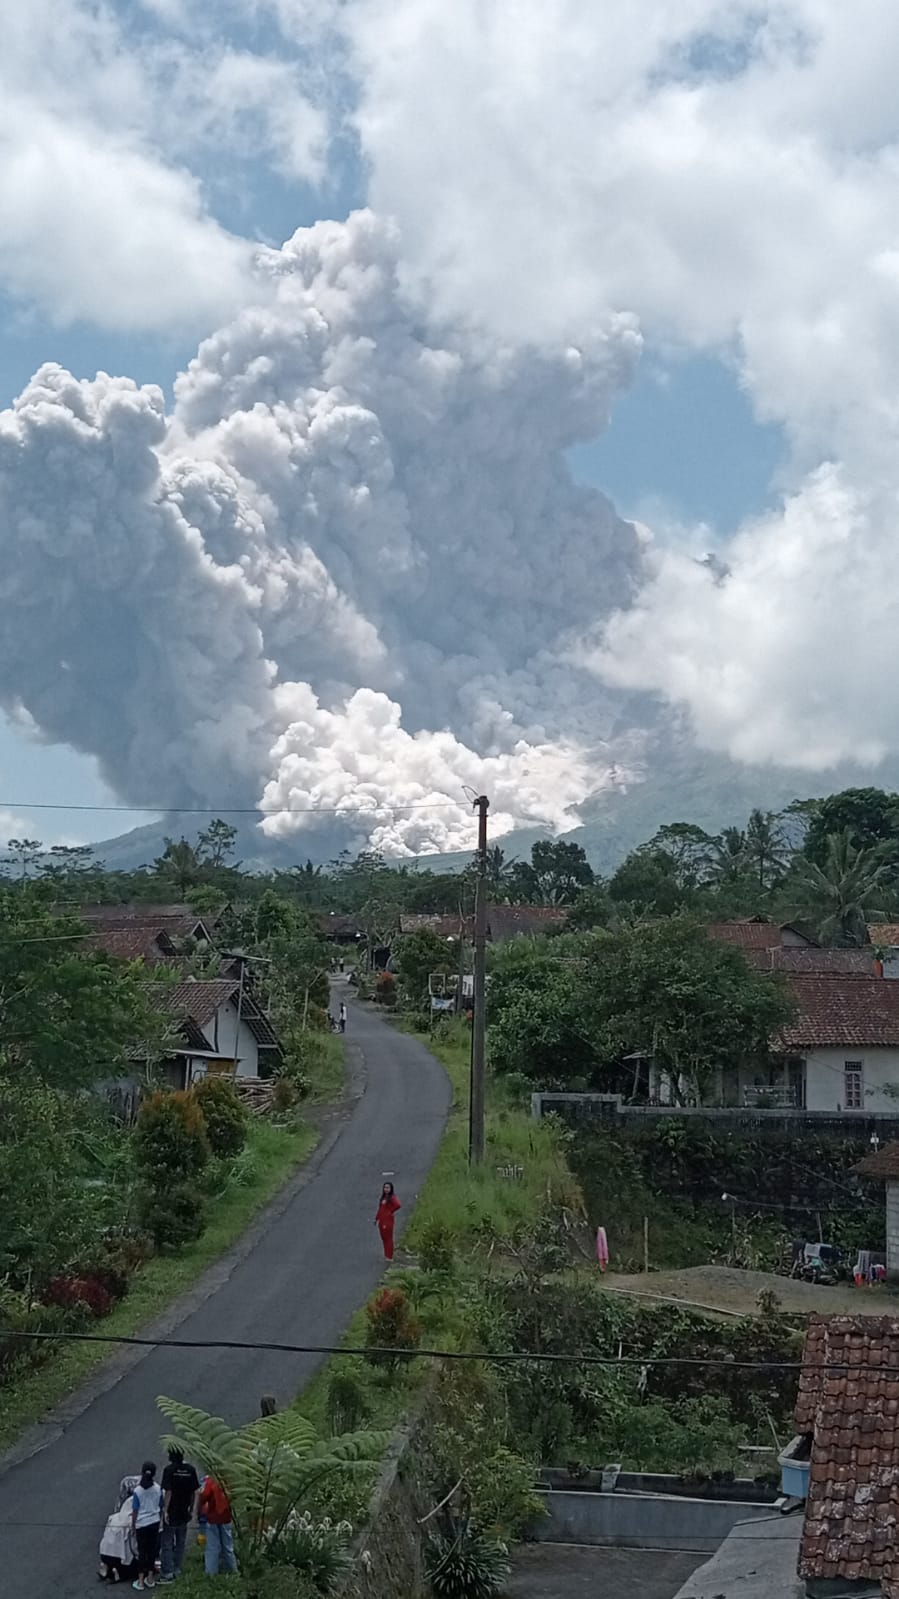 Gunung Merapi Semburkan Awan Panas Siang Tadi, Inilah Himbauan BPPTKG Yogyakarta  